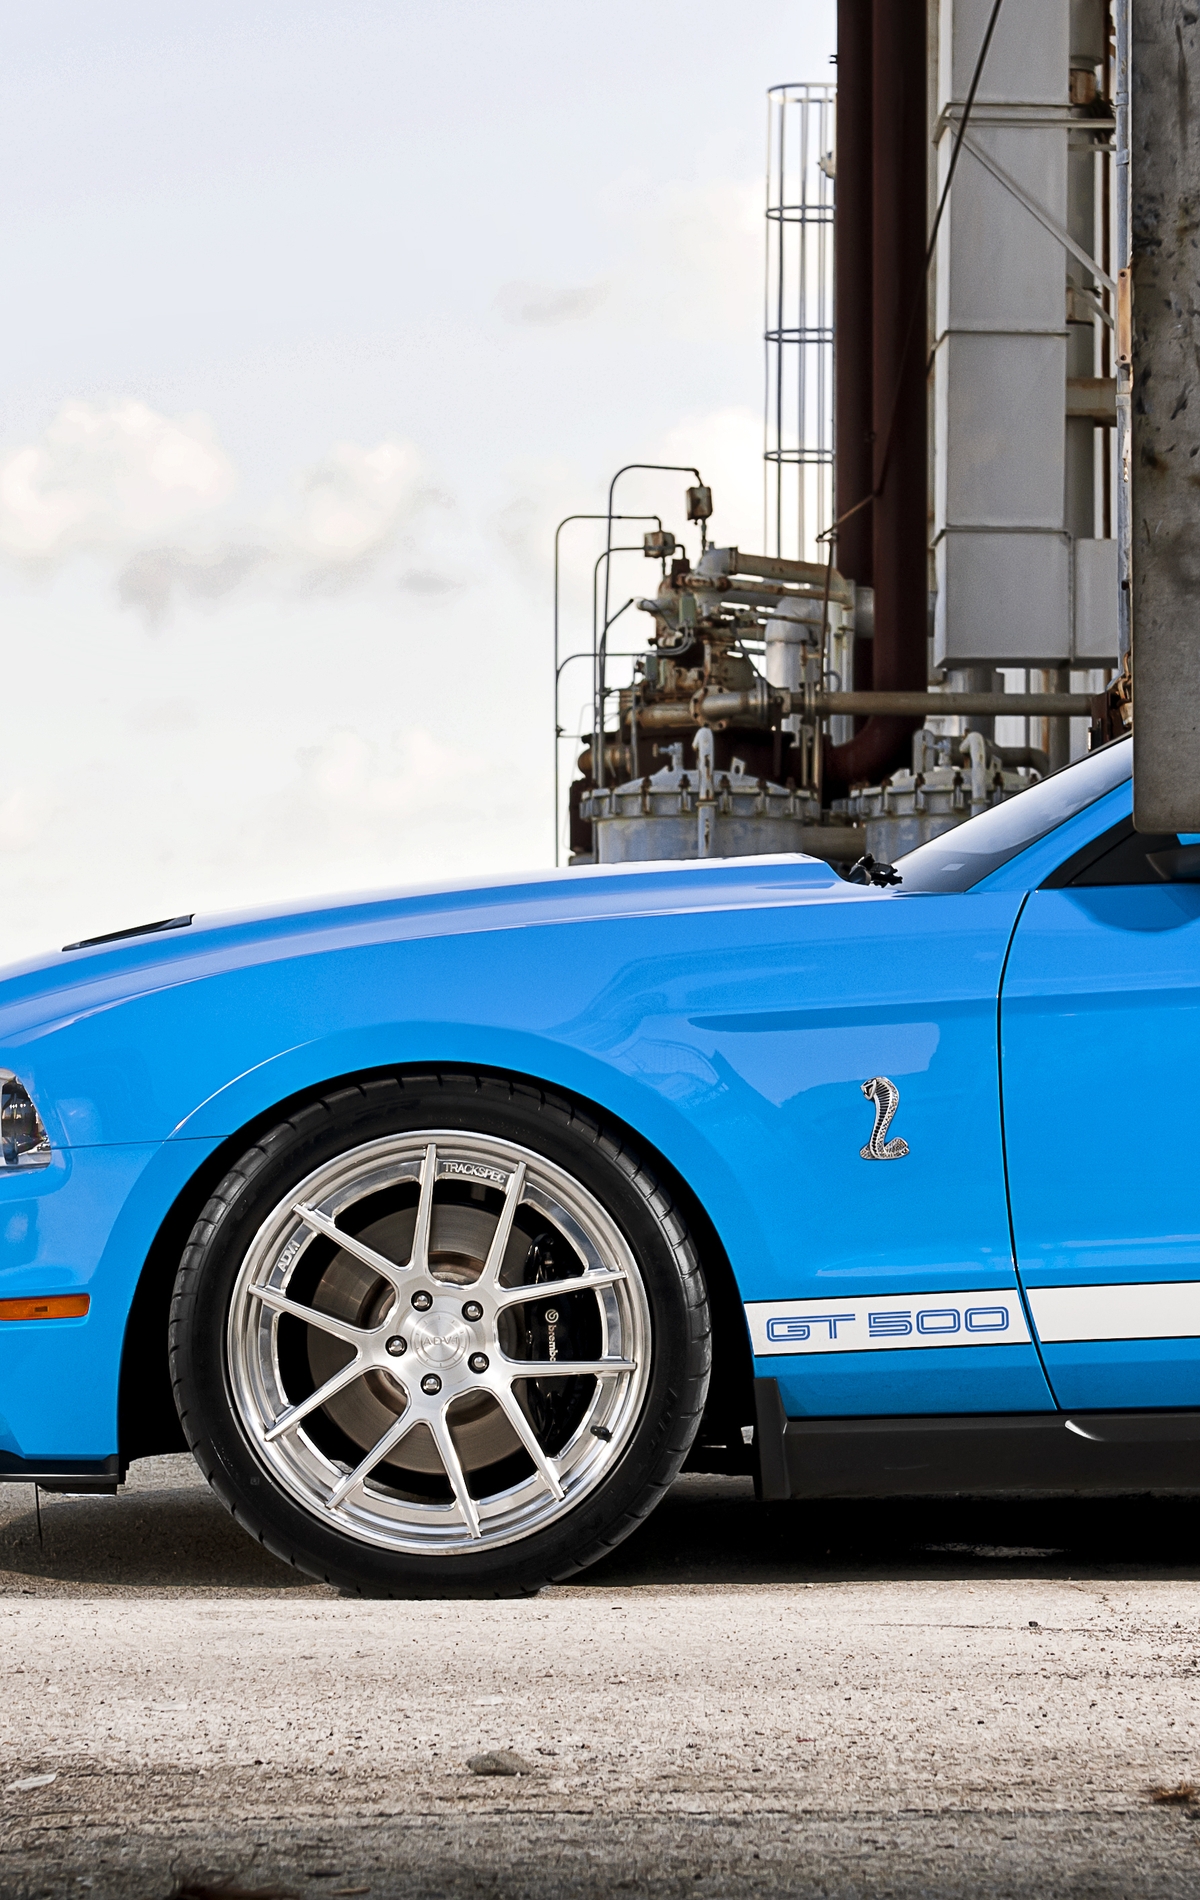 Картинка: Форд, Мустанг, шелби, GT 500, голубой, колесо, ограждение, сетка